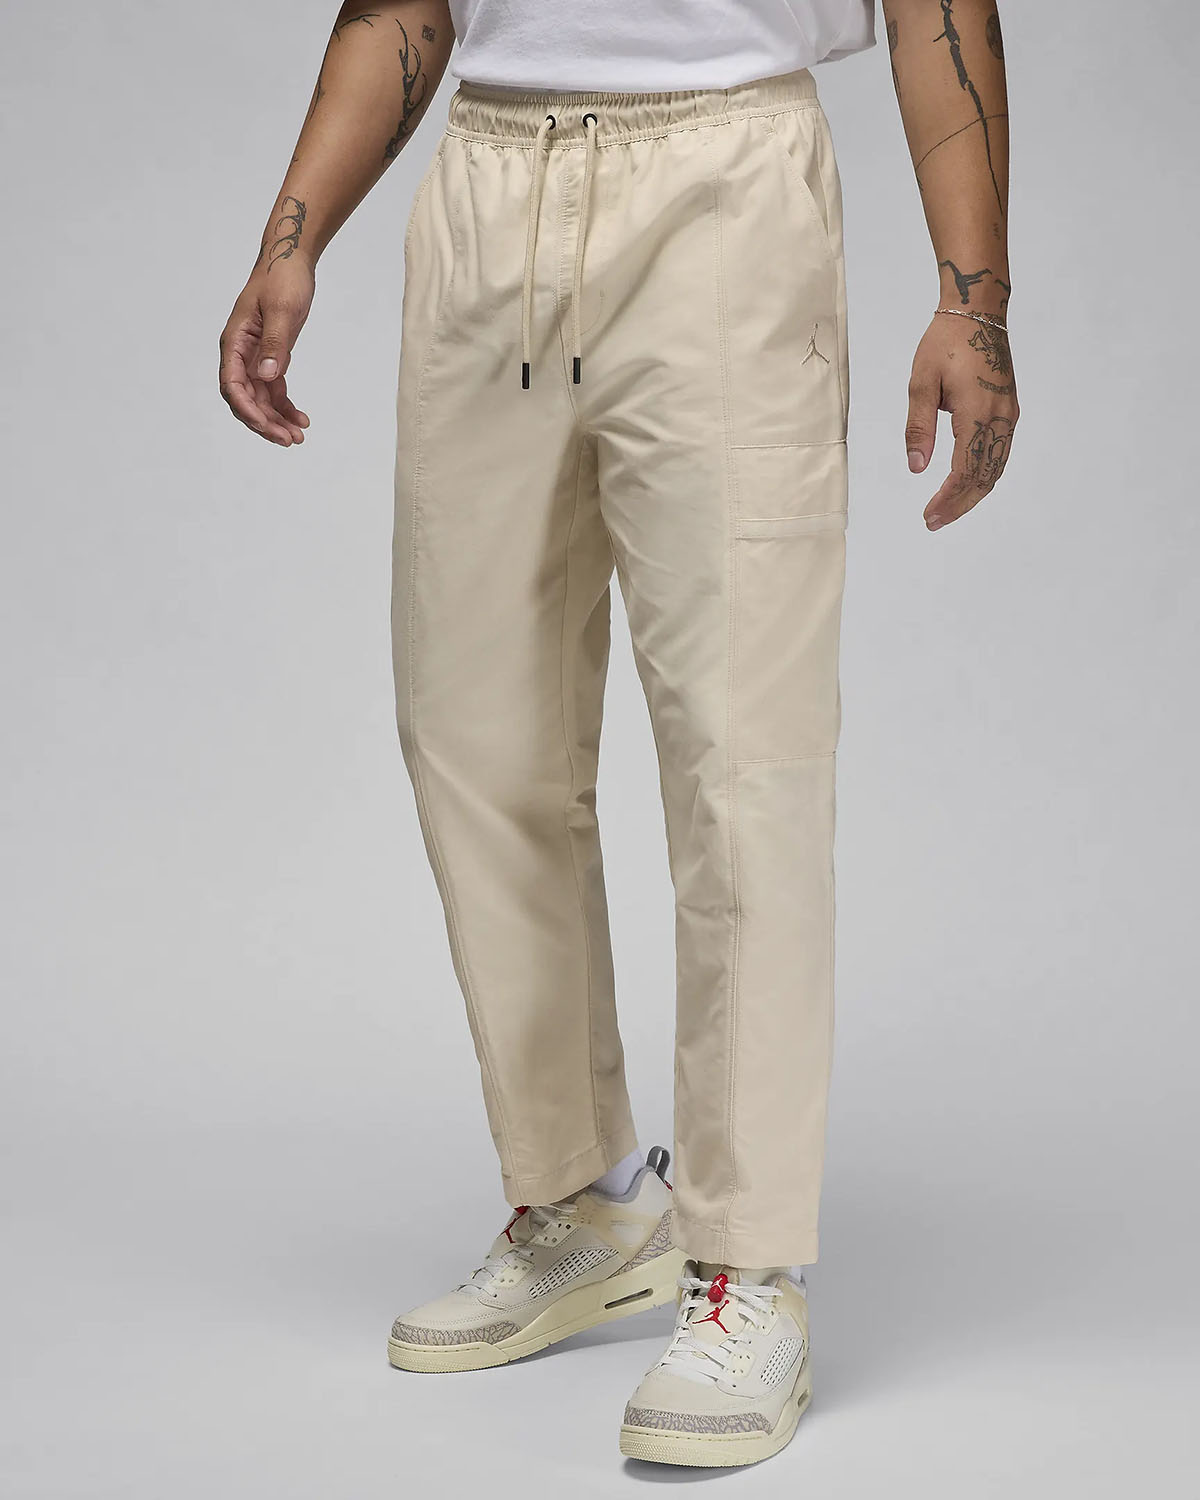 Jordan Essentials Woven Pants Air Jordan 1 Acclimate Releasing in White and Grey 1